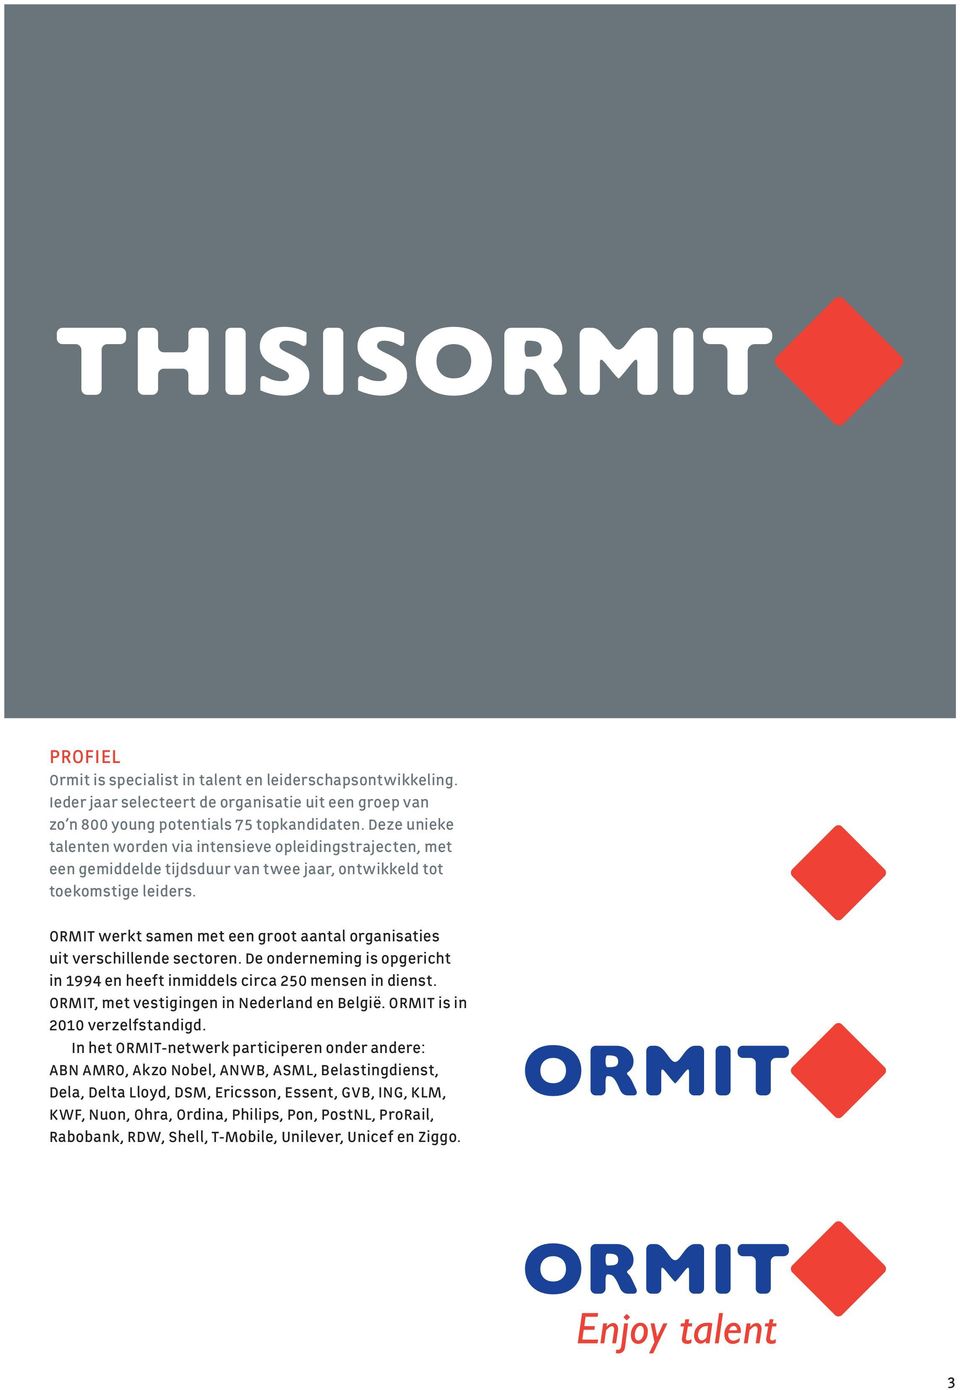 ORMIT werkt samen met een groot aantal organisaties uit verschillende sectoren. De onderneming is opgericht in 1994 en heeft inmiddels circa 250 mensen in dienst.